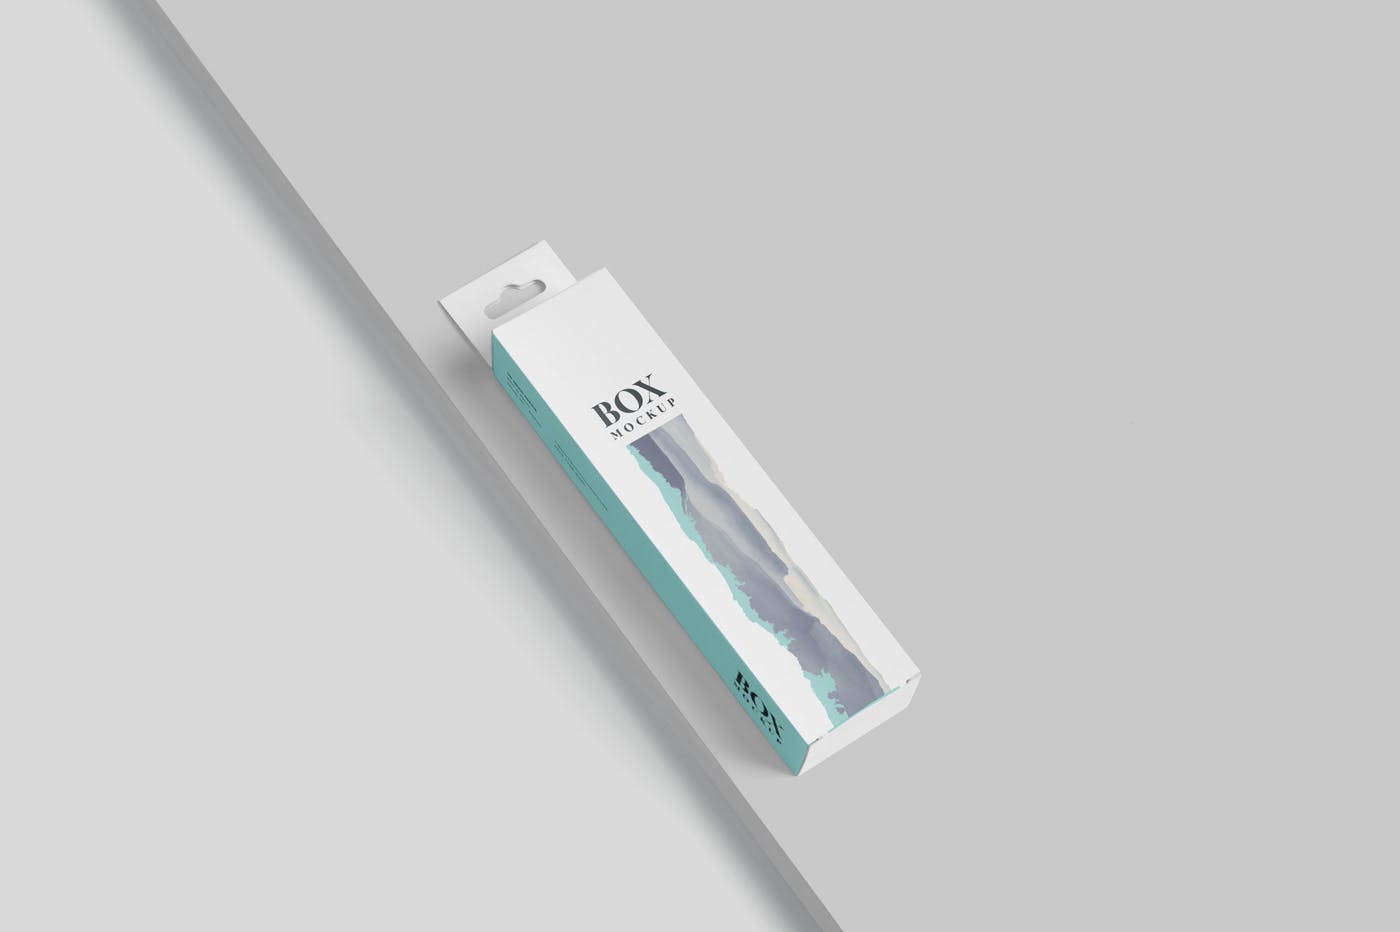 超薄矩形长条包装盒外观设计效果图素材中国精选 Box Mockup PSDs – High Slim Rectangle Size Hanger插图(3)